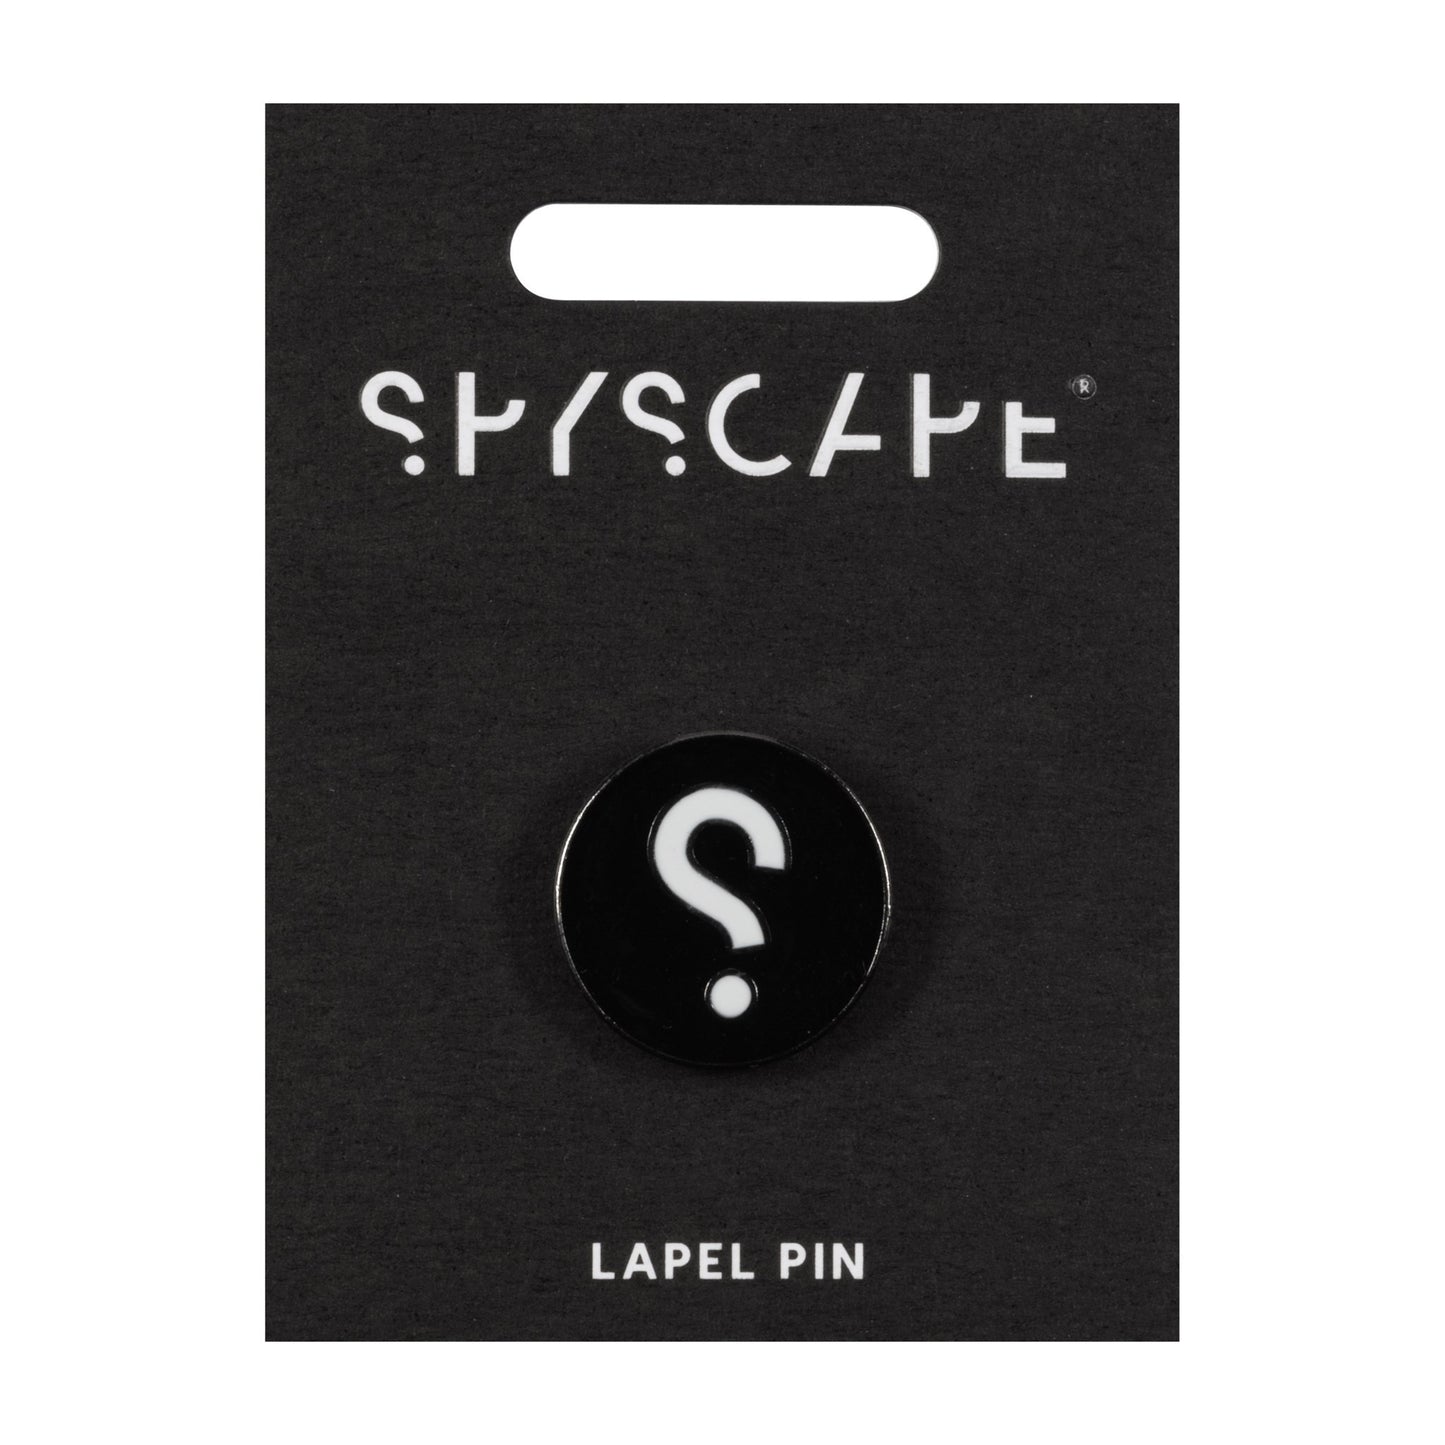 SPYSCAPE Lapel Pin - 